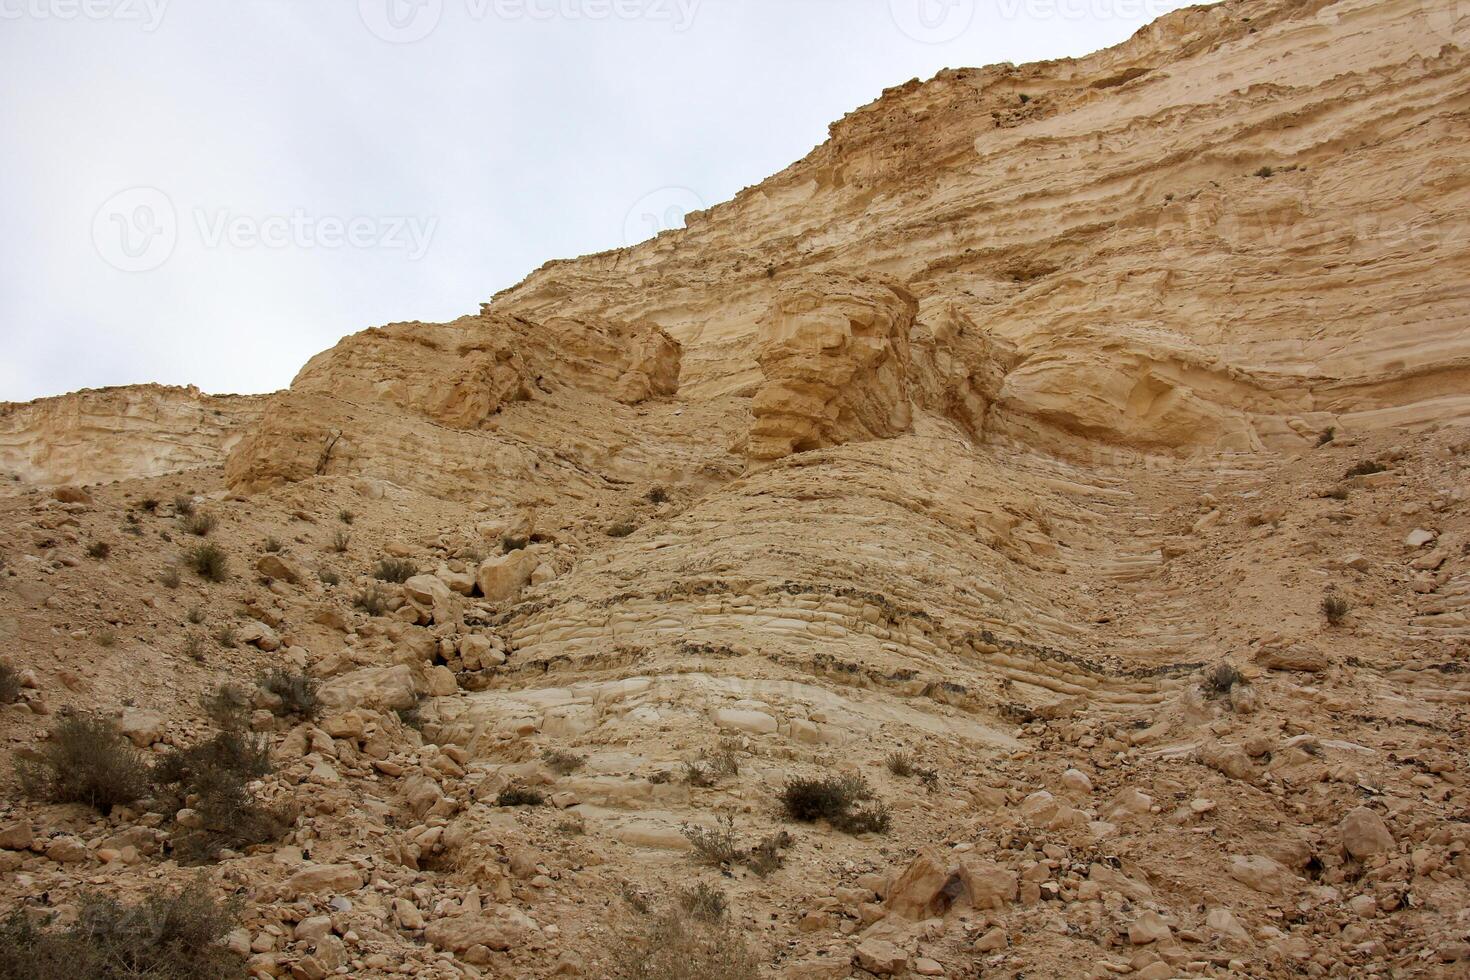 de negev is een woestijn in de midden- oosten, gelegen in Israël en bezetten over 60 van haar grondgebied. foto